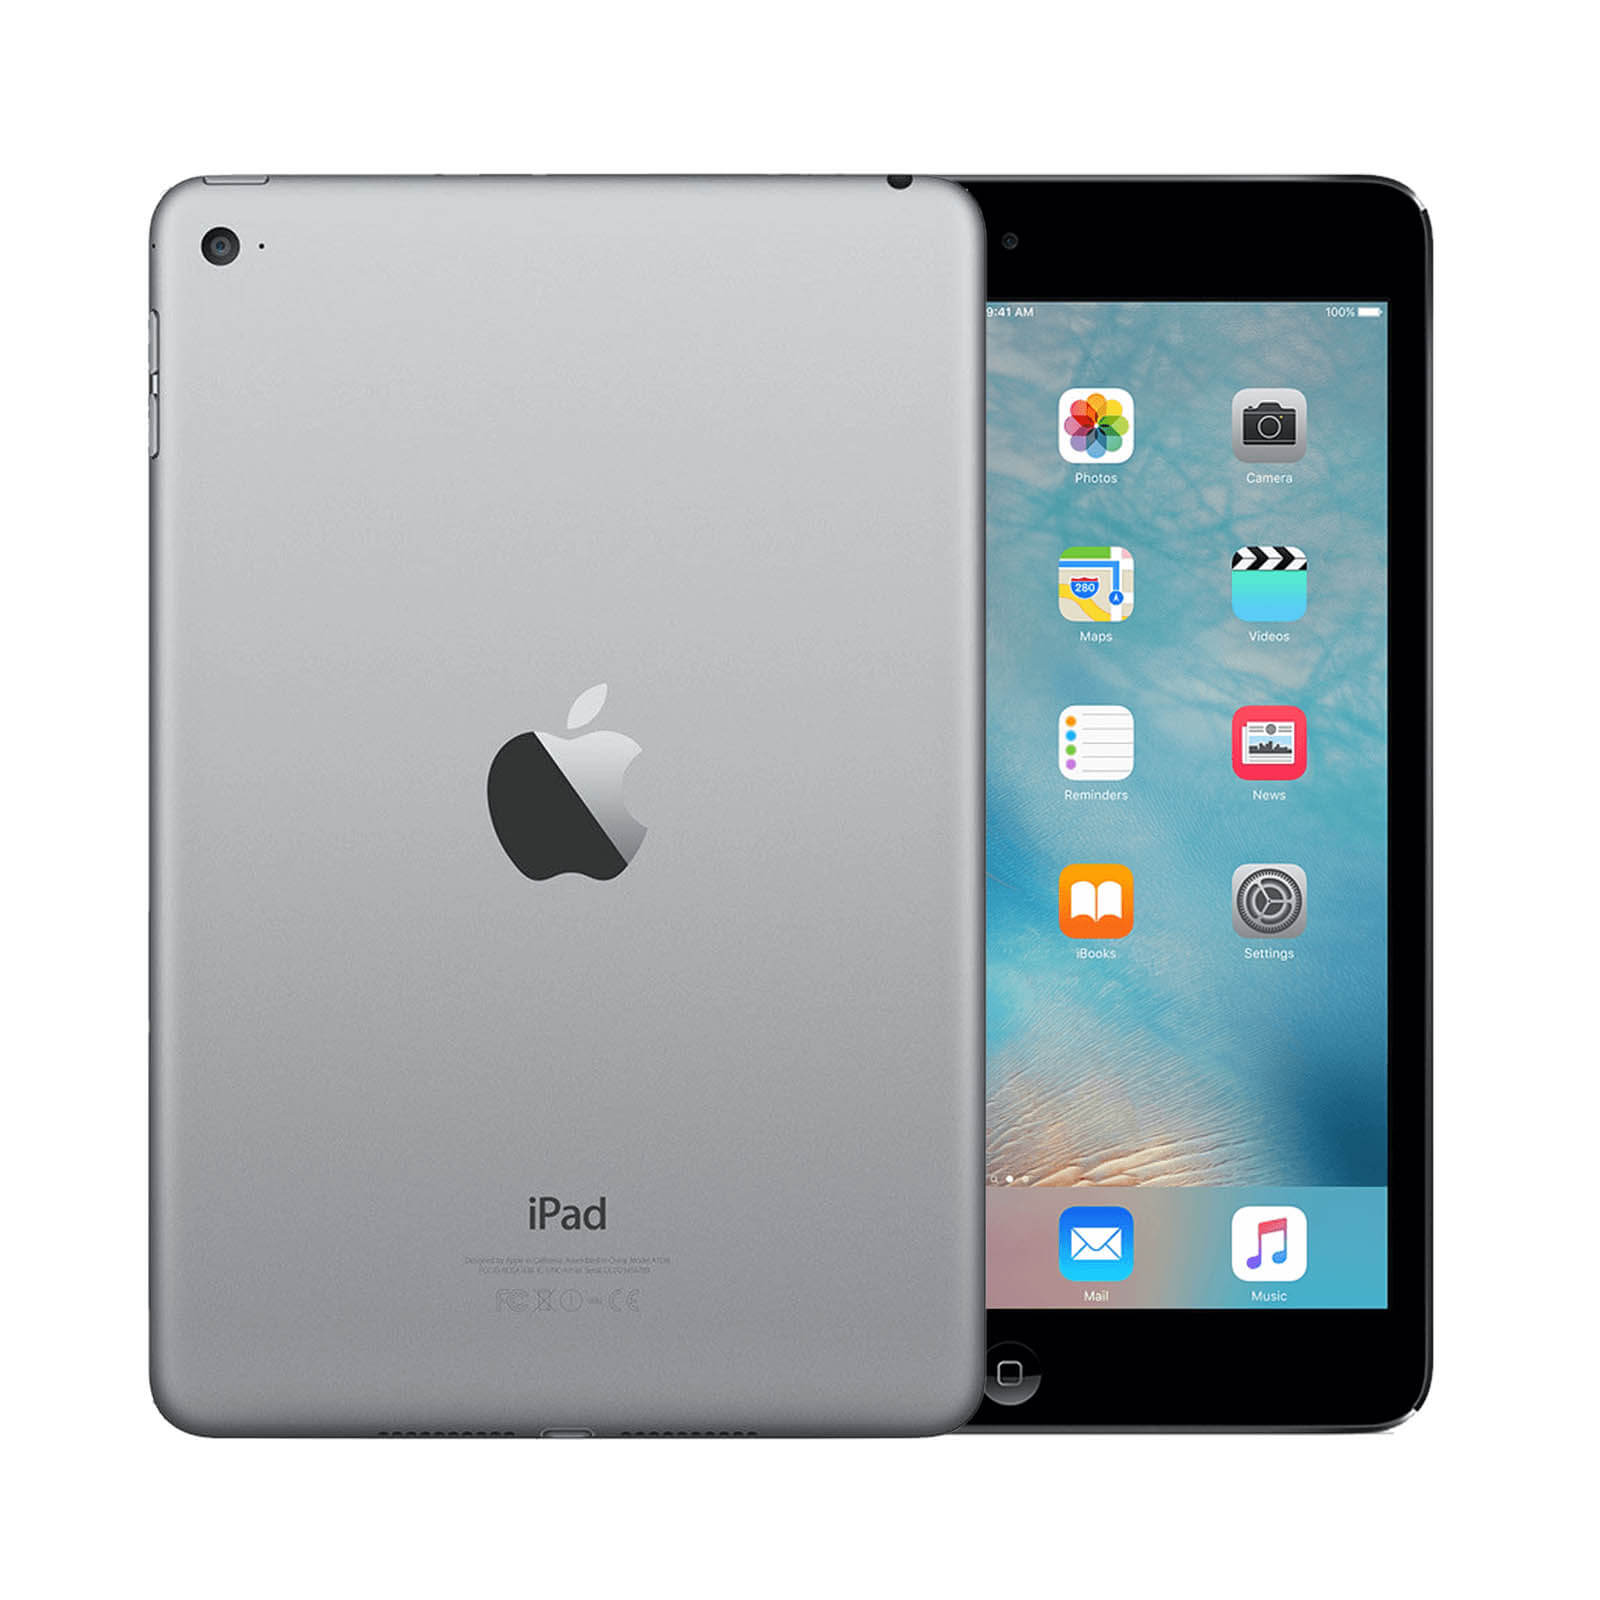 Apple iPad Mini 4 128GB Space Grey WiFi - Very Good 128GB Space Grey Very Good